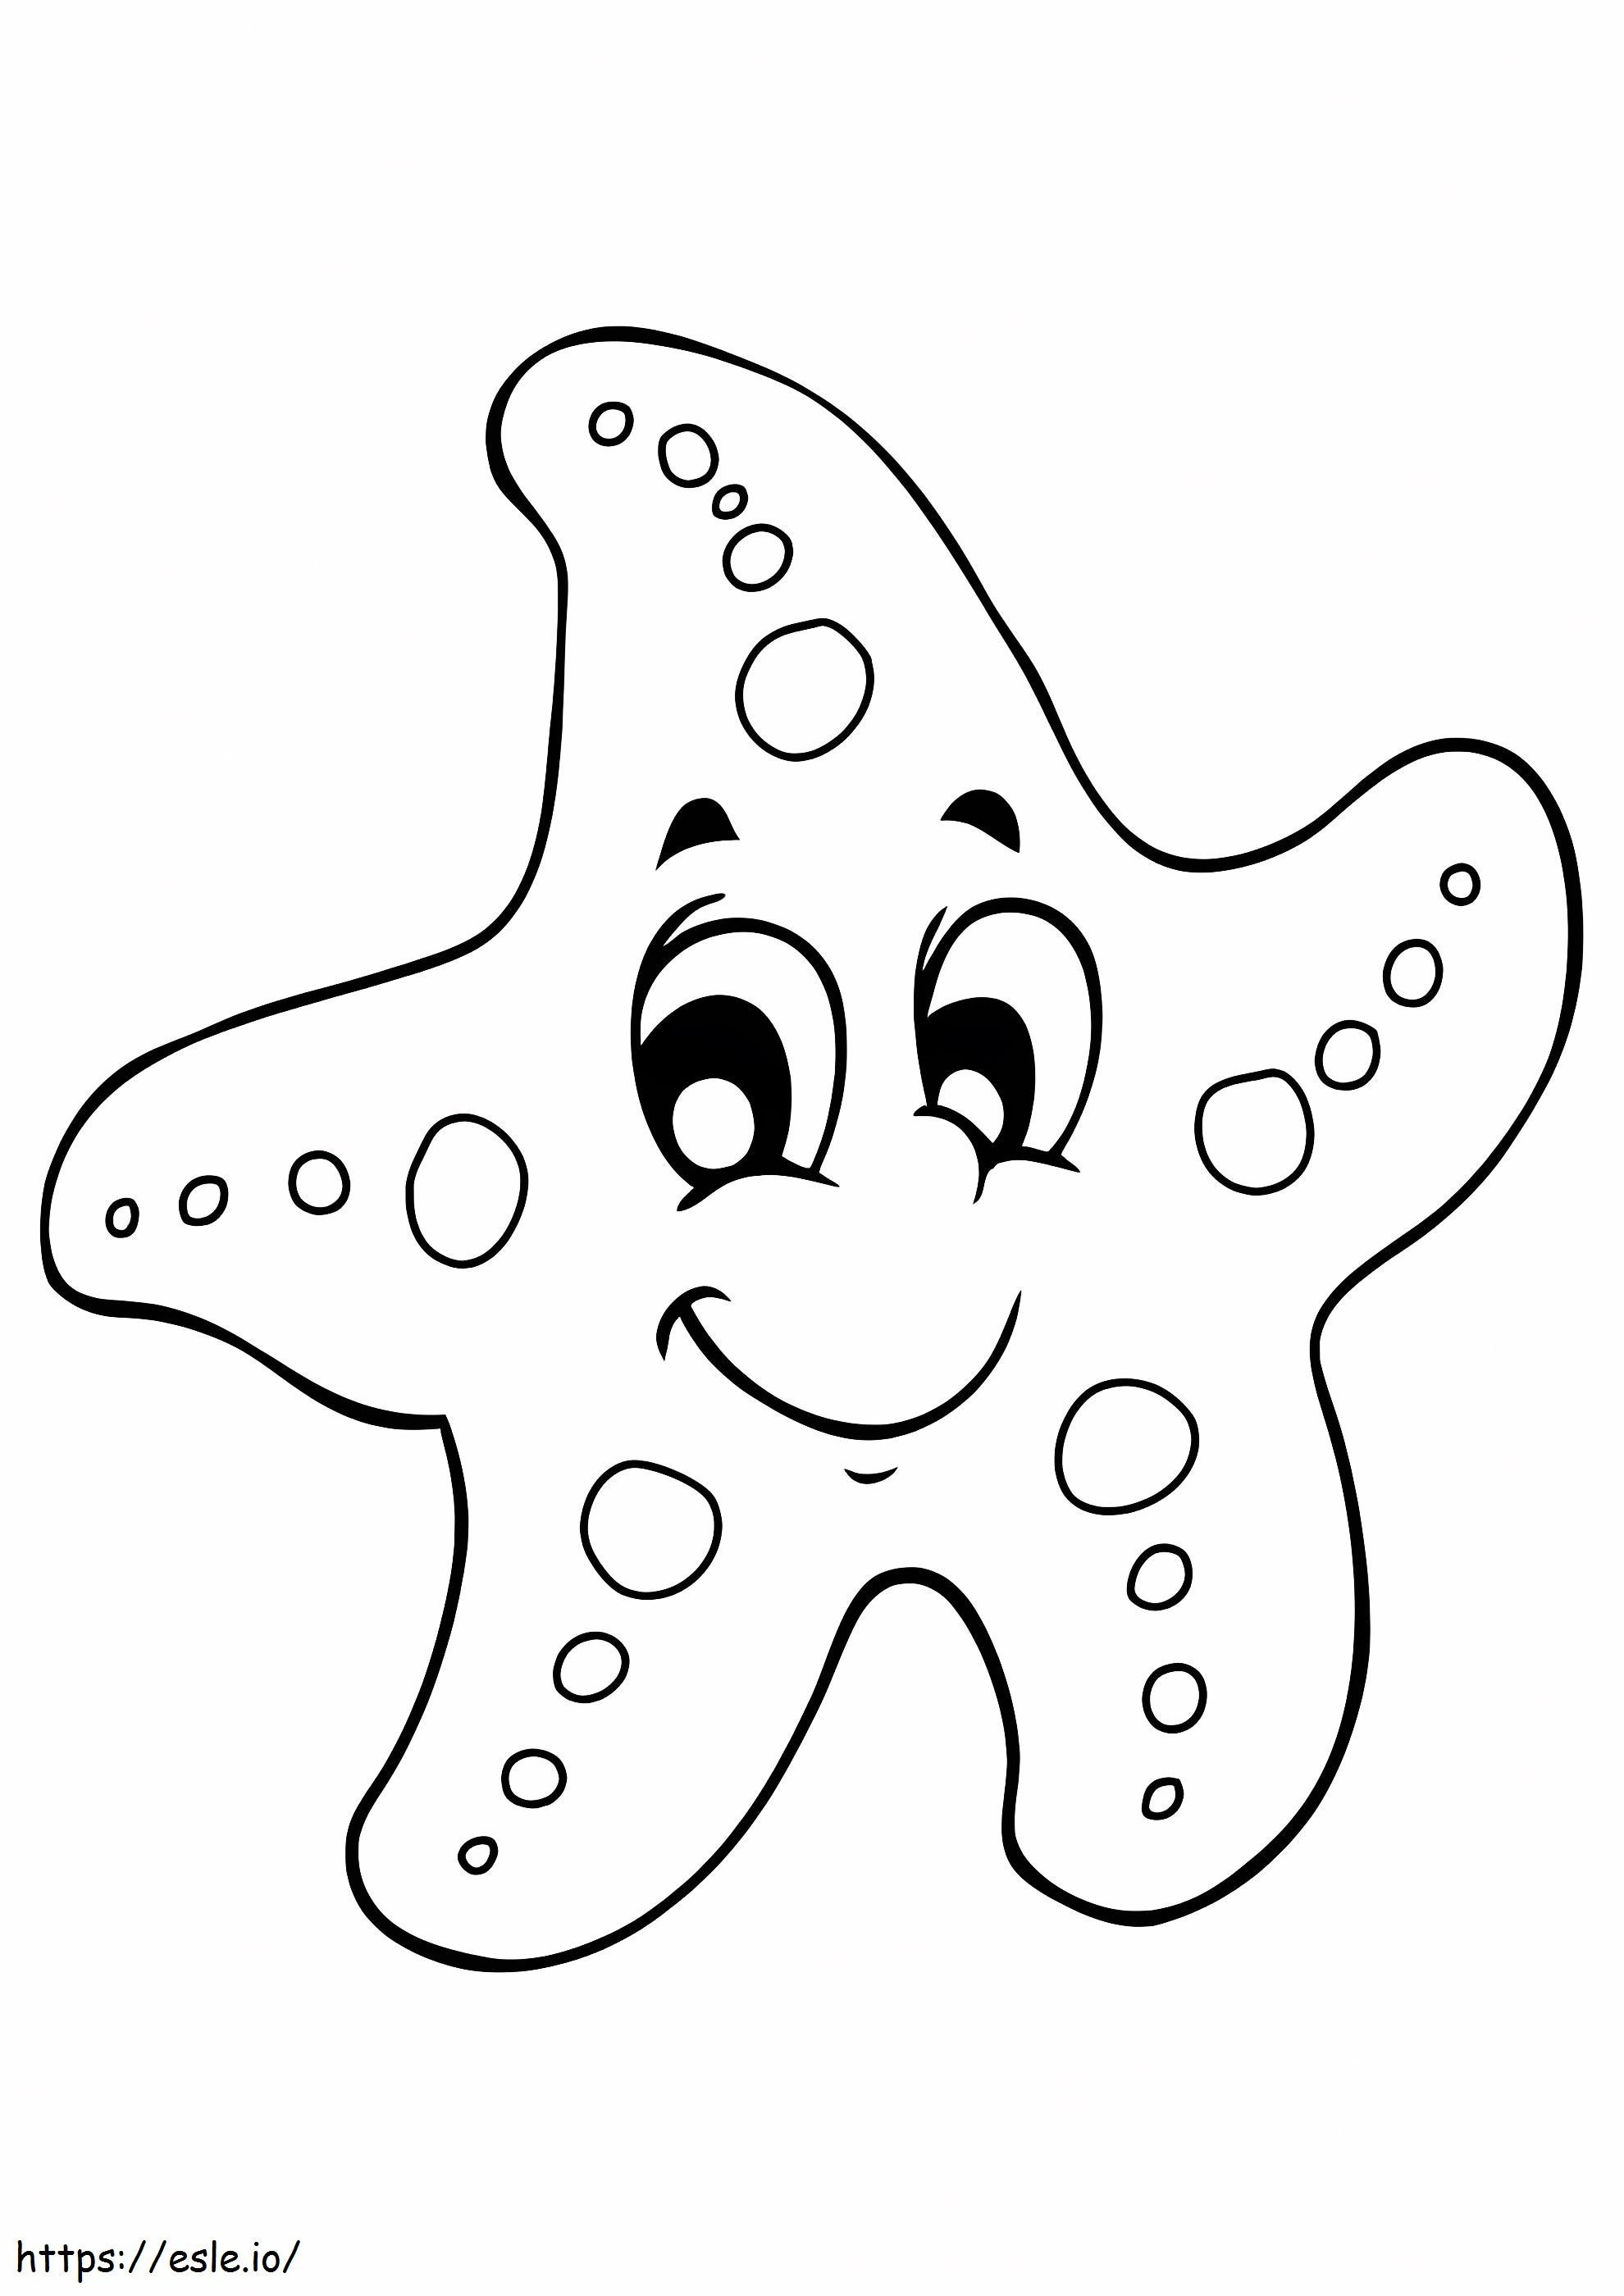 Coloriage Cool Starfish Sonriendo à imprimer dessin